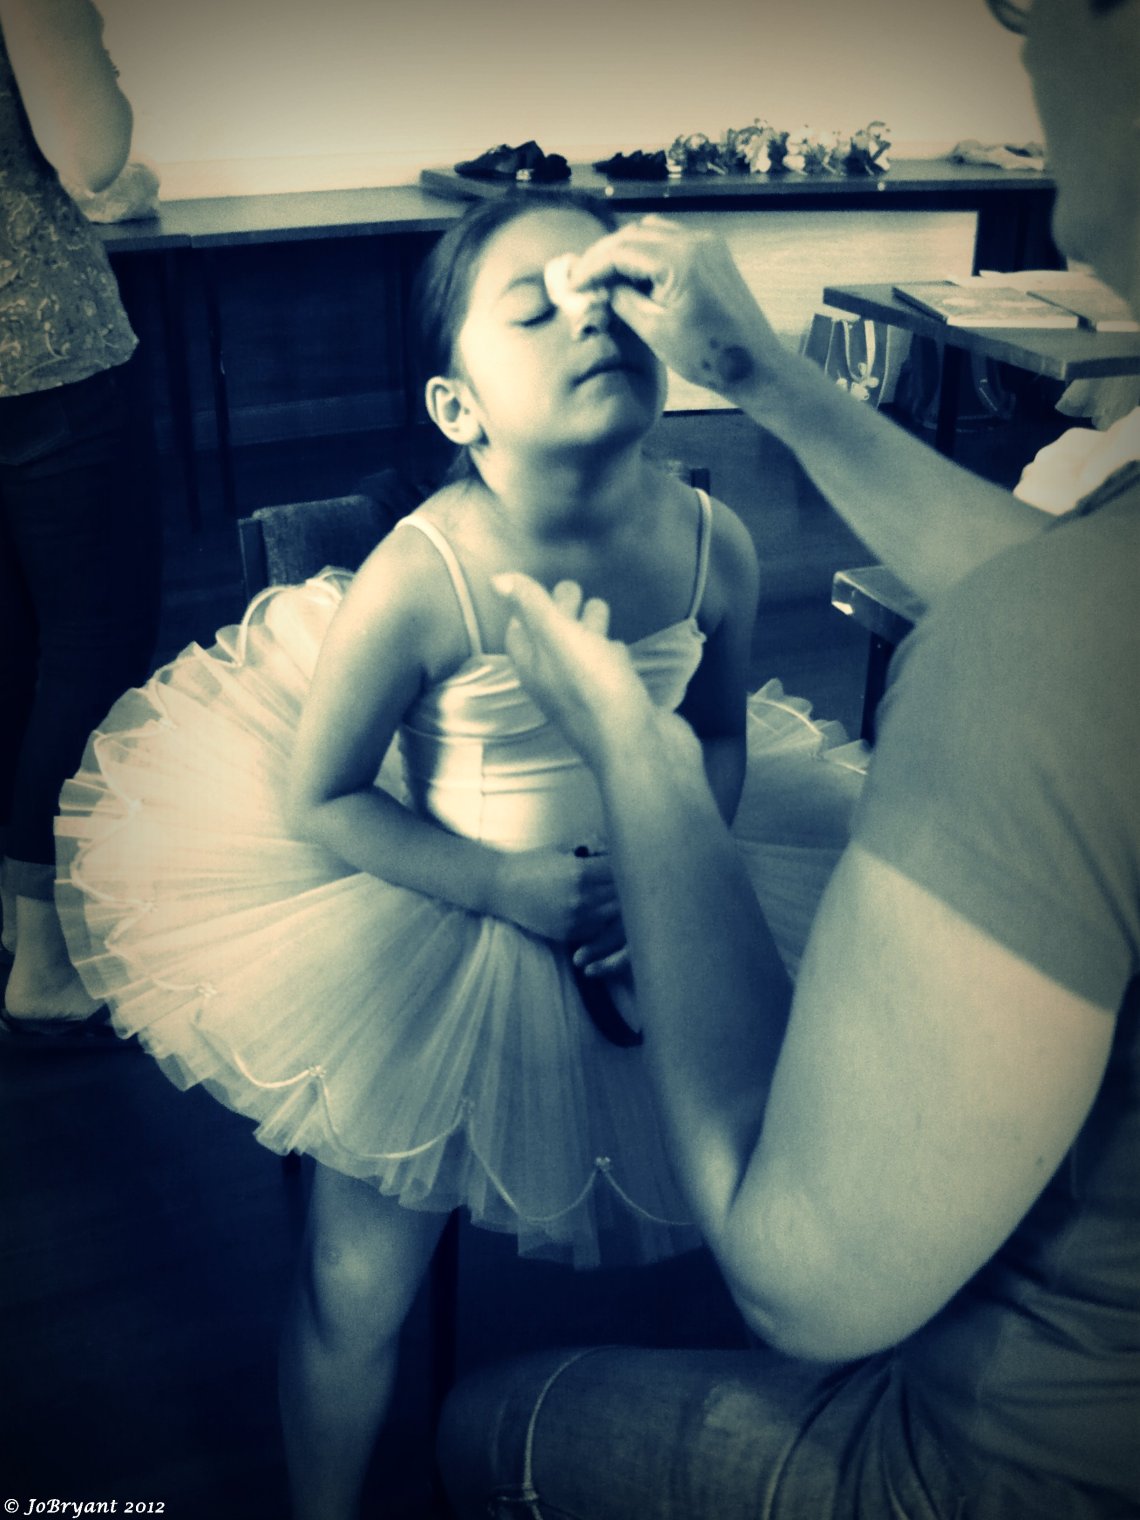 ballet girl